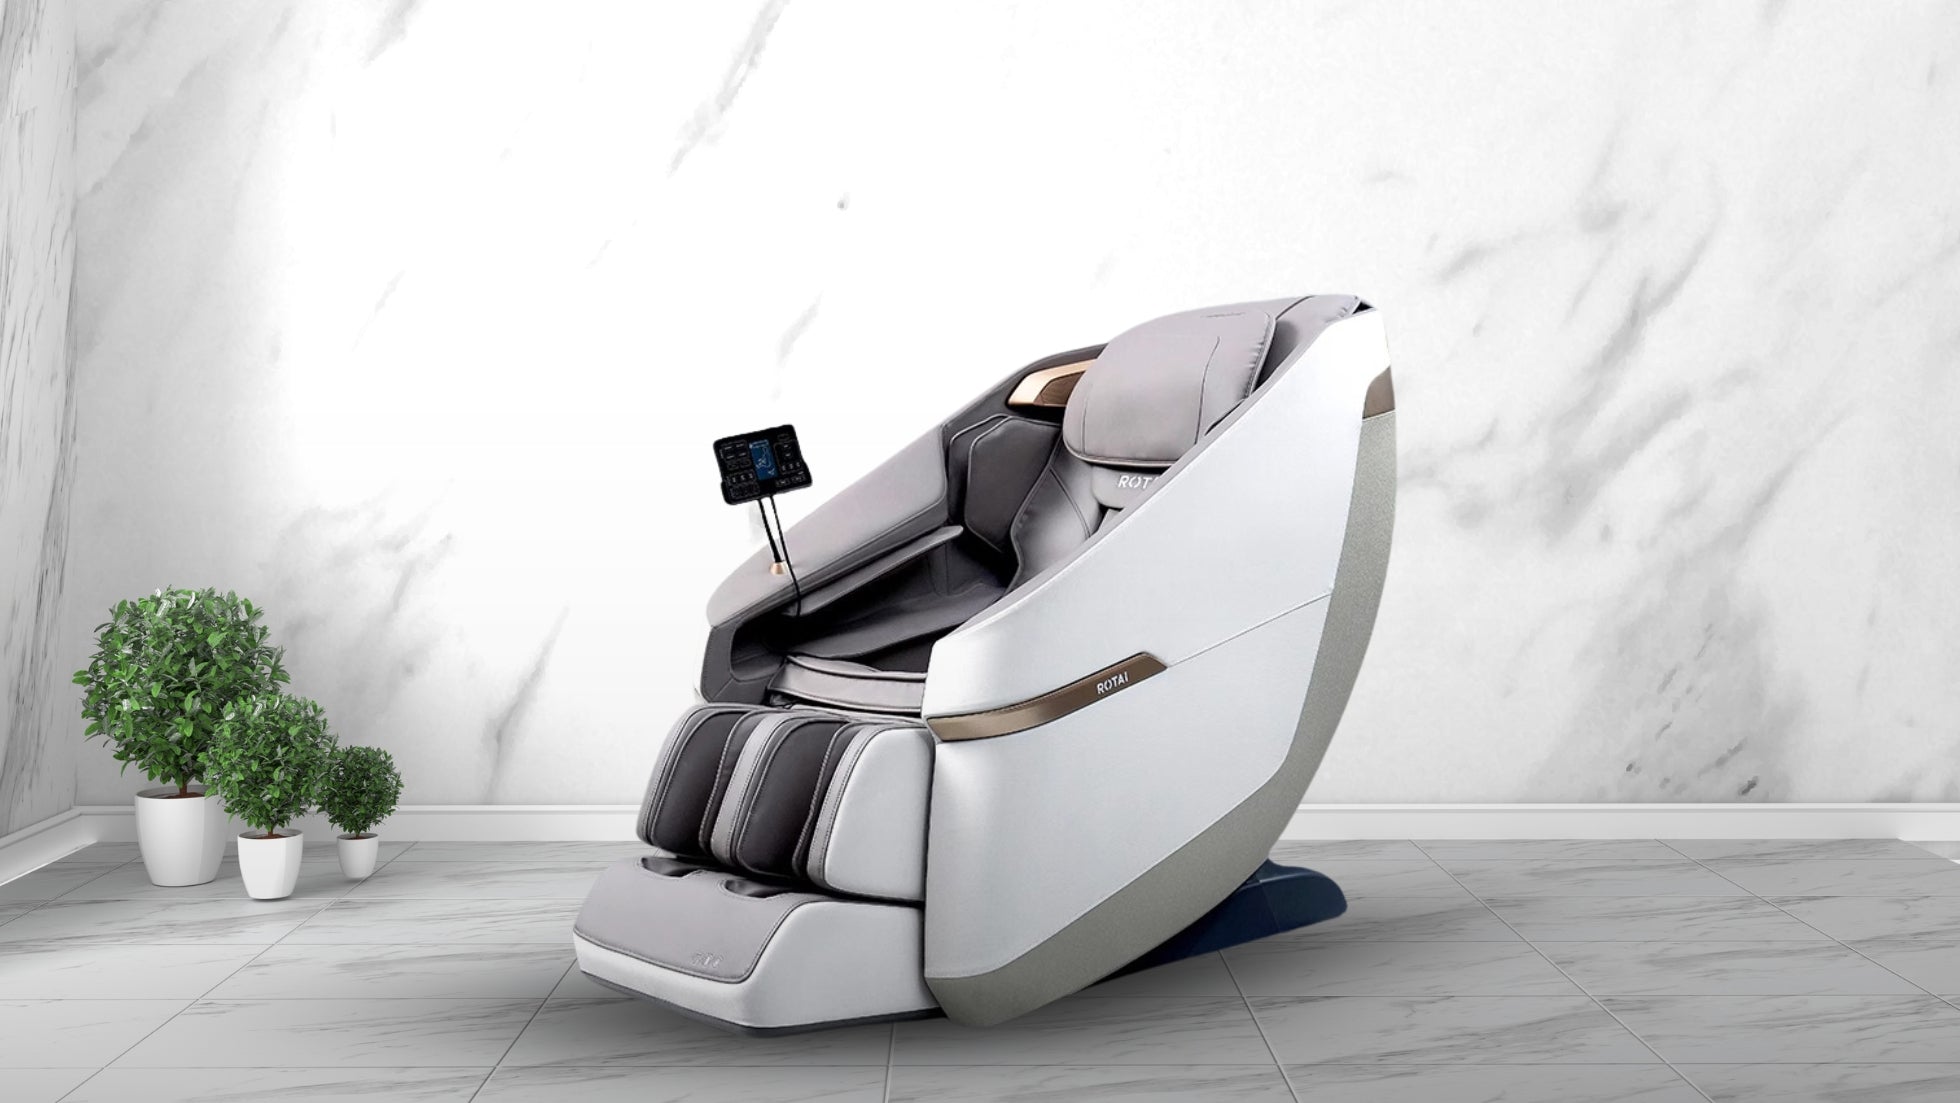 كرسي التدليك جيماني A36 باللون الرمادي، أفضل كرسي تدليك في الإمارات، العلامة التجارية الأولى لكراسي التدليك